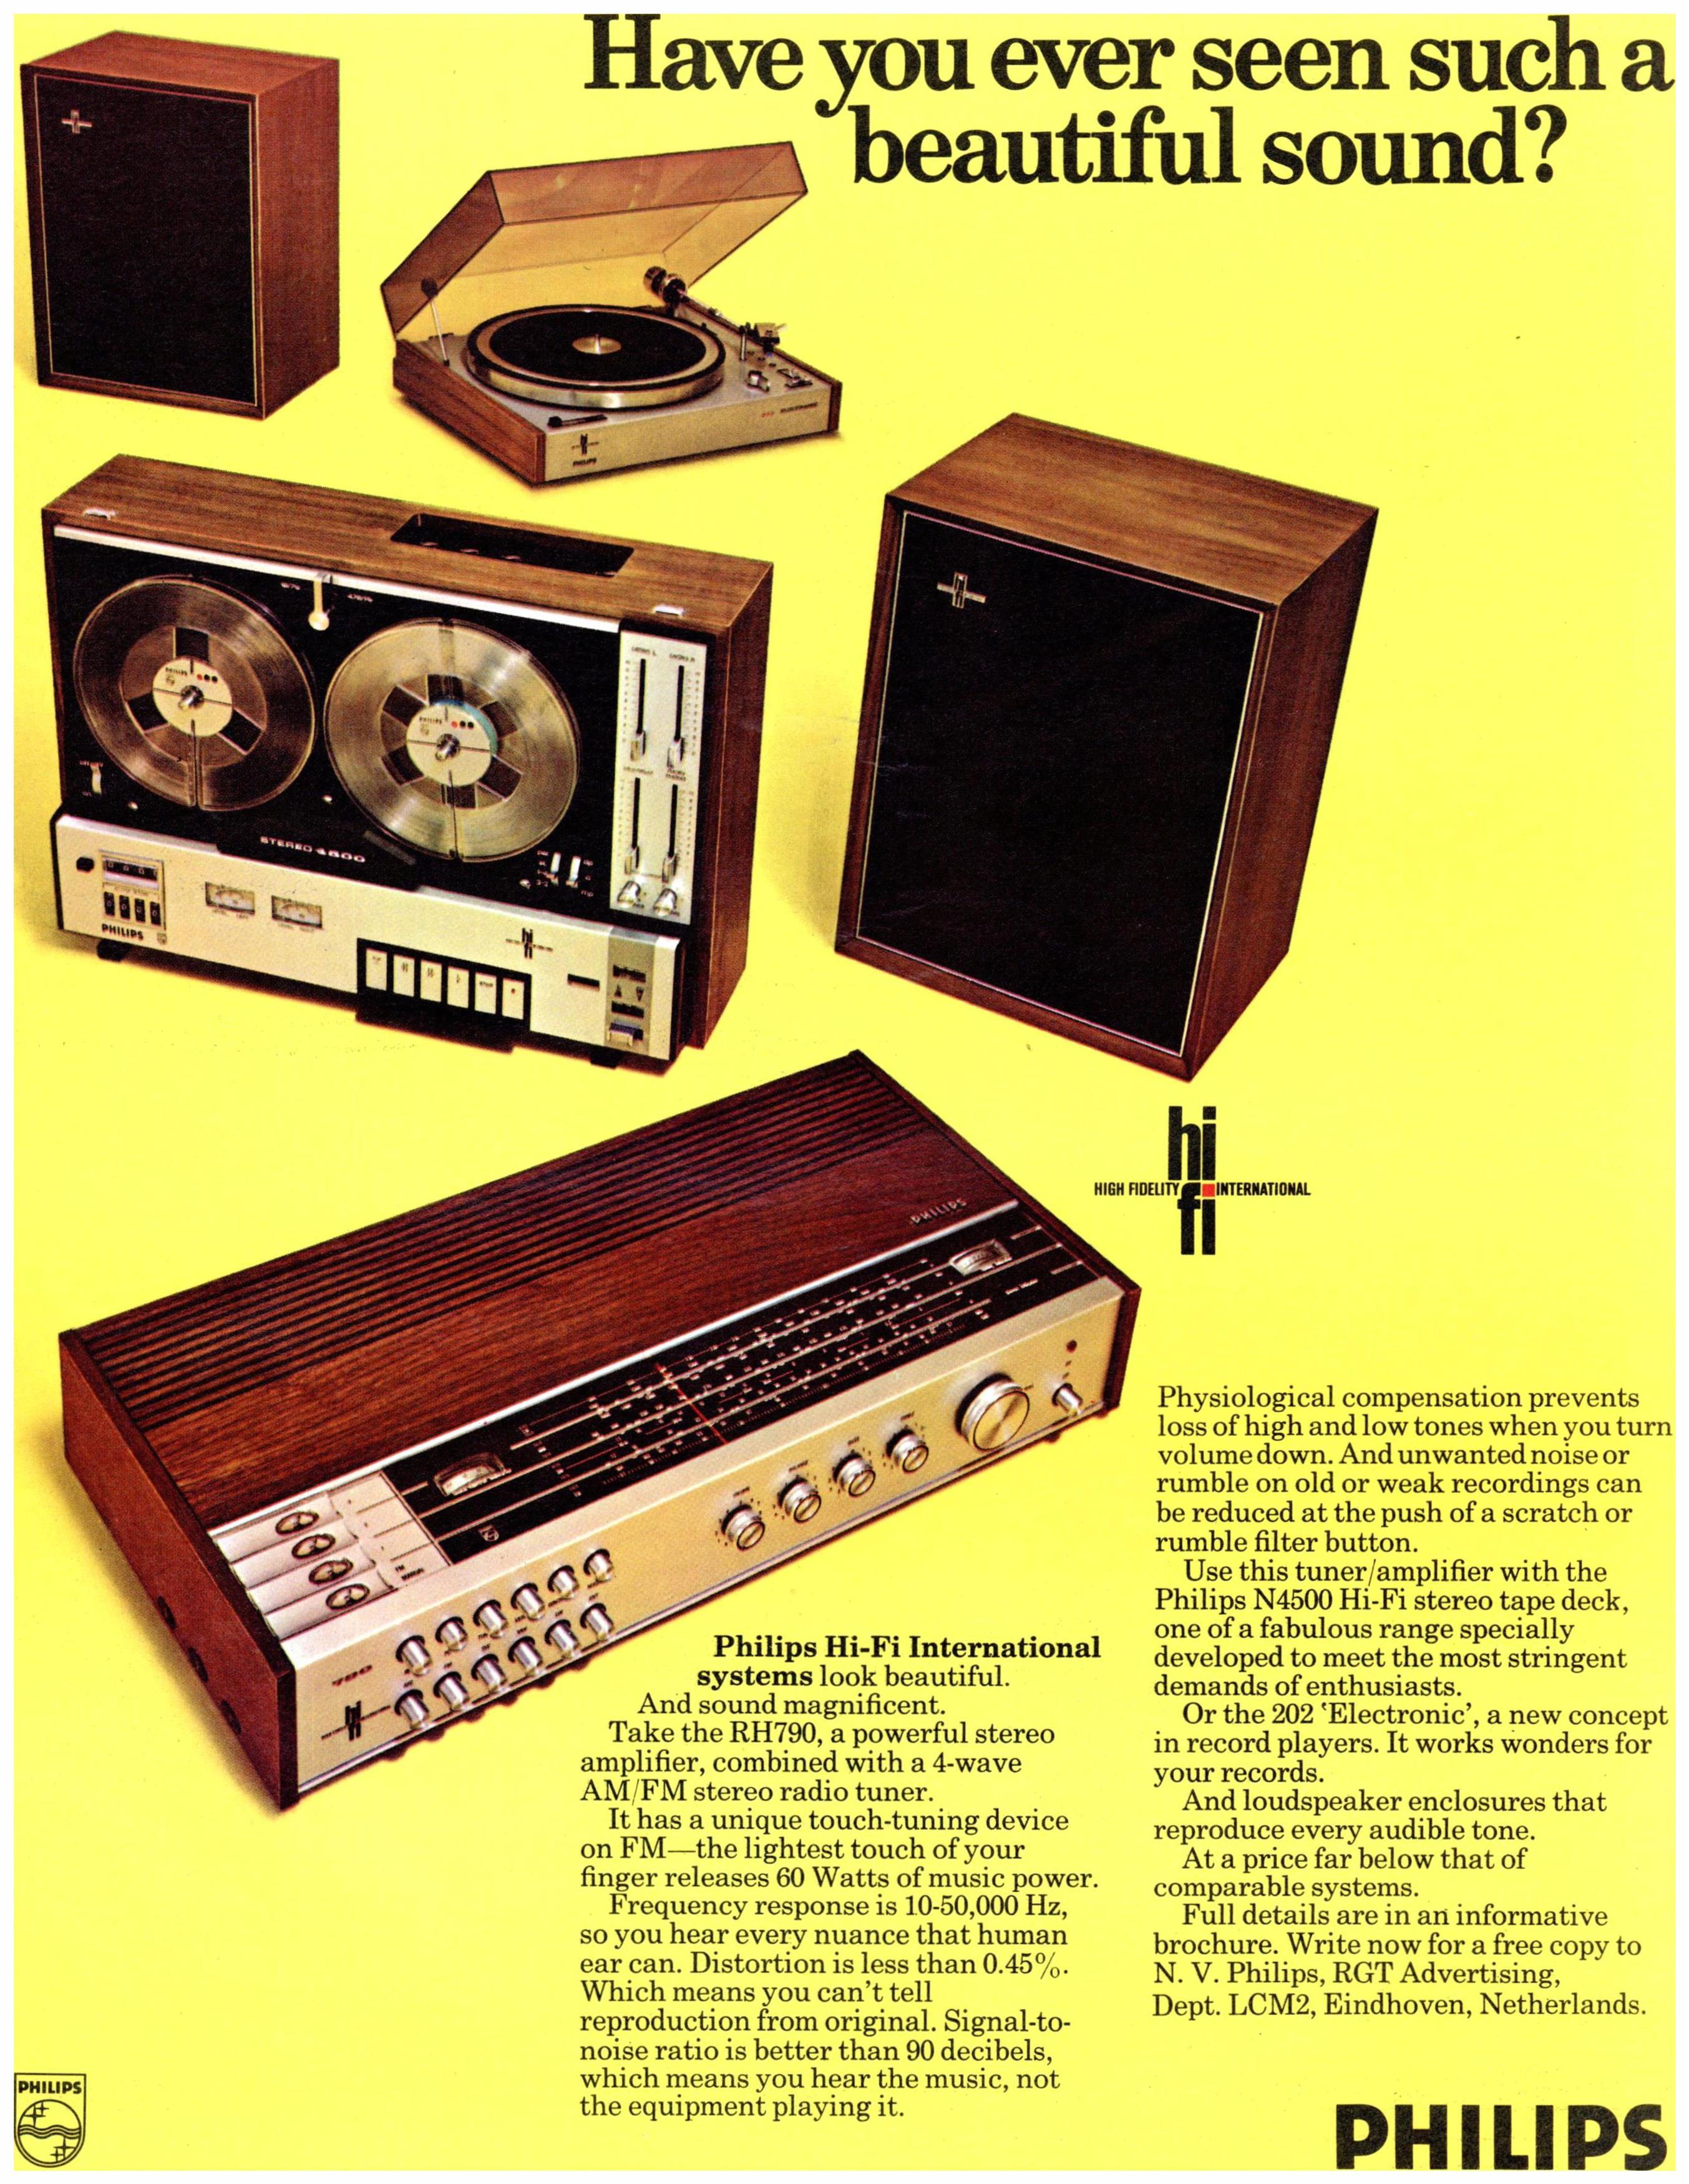 Philips 1969 01.jpg